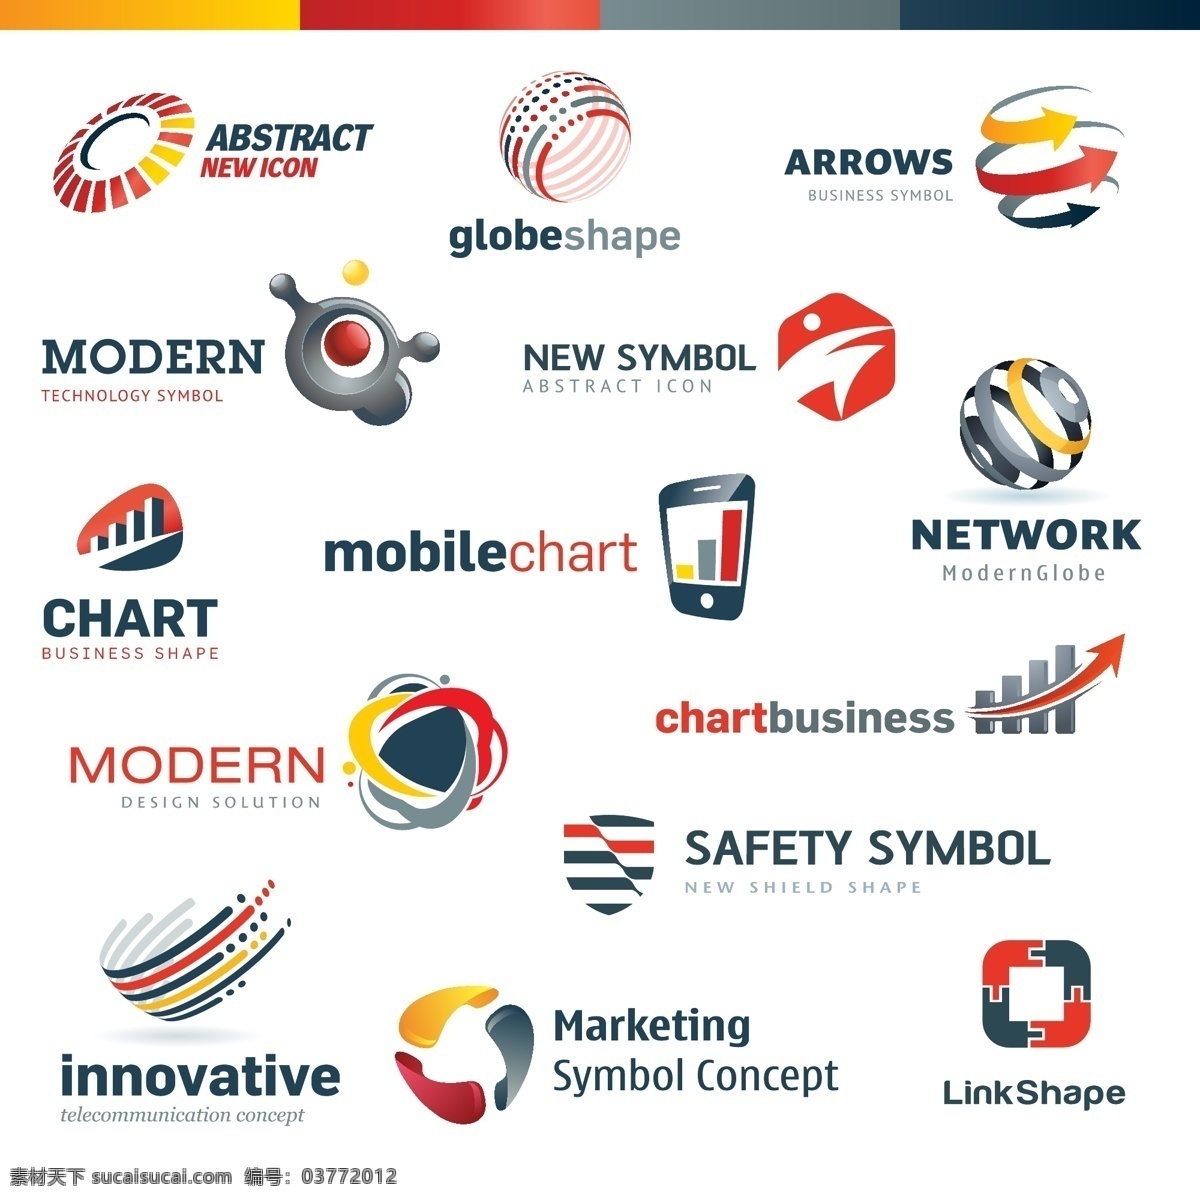 矢量标志素材 手机 图案 网络科技 标志 标志设计 矢量标志 企业标志 logo 行业标志 标志图标 矢量素材 白色